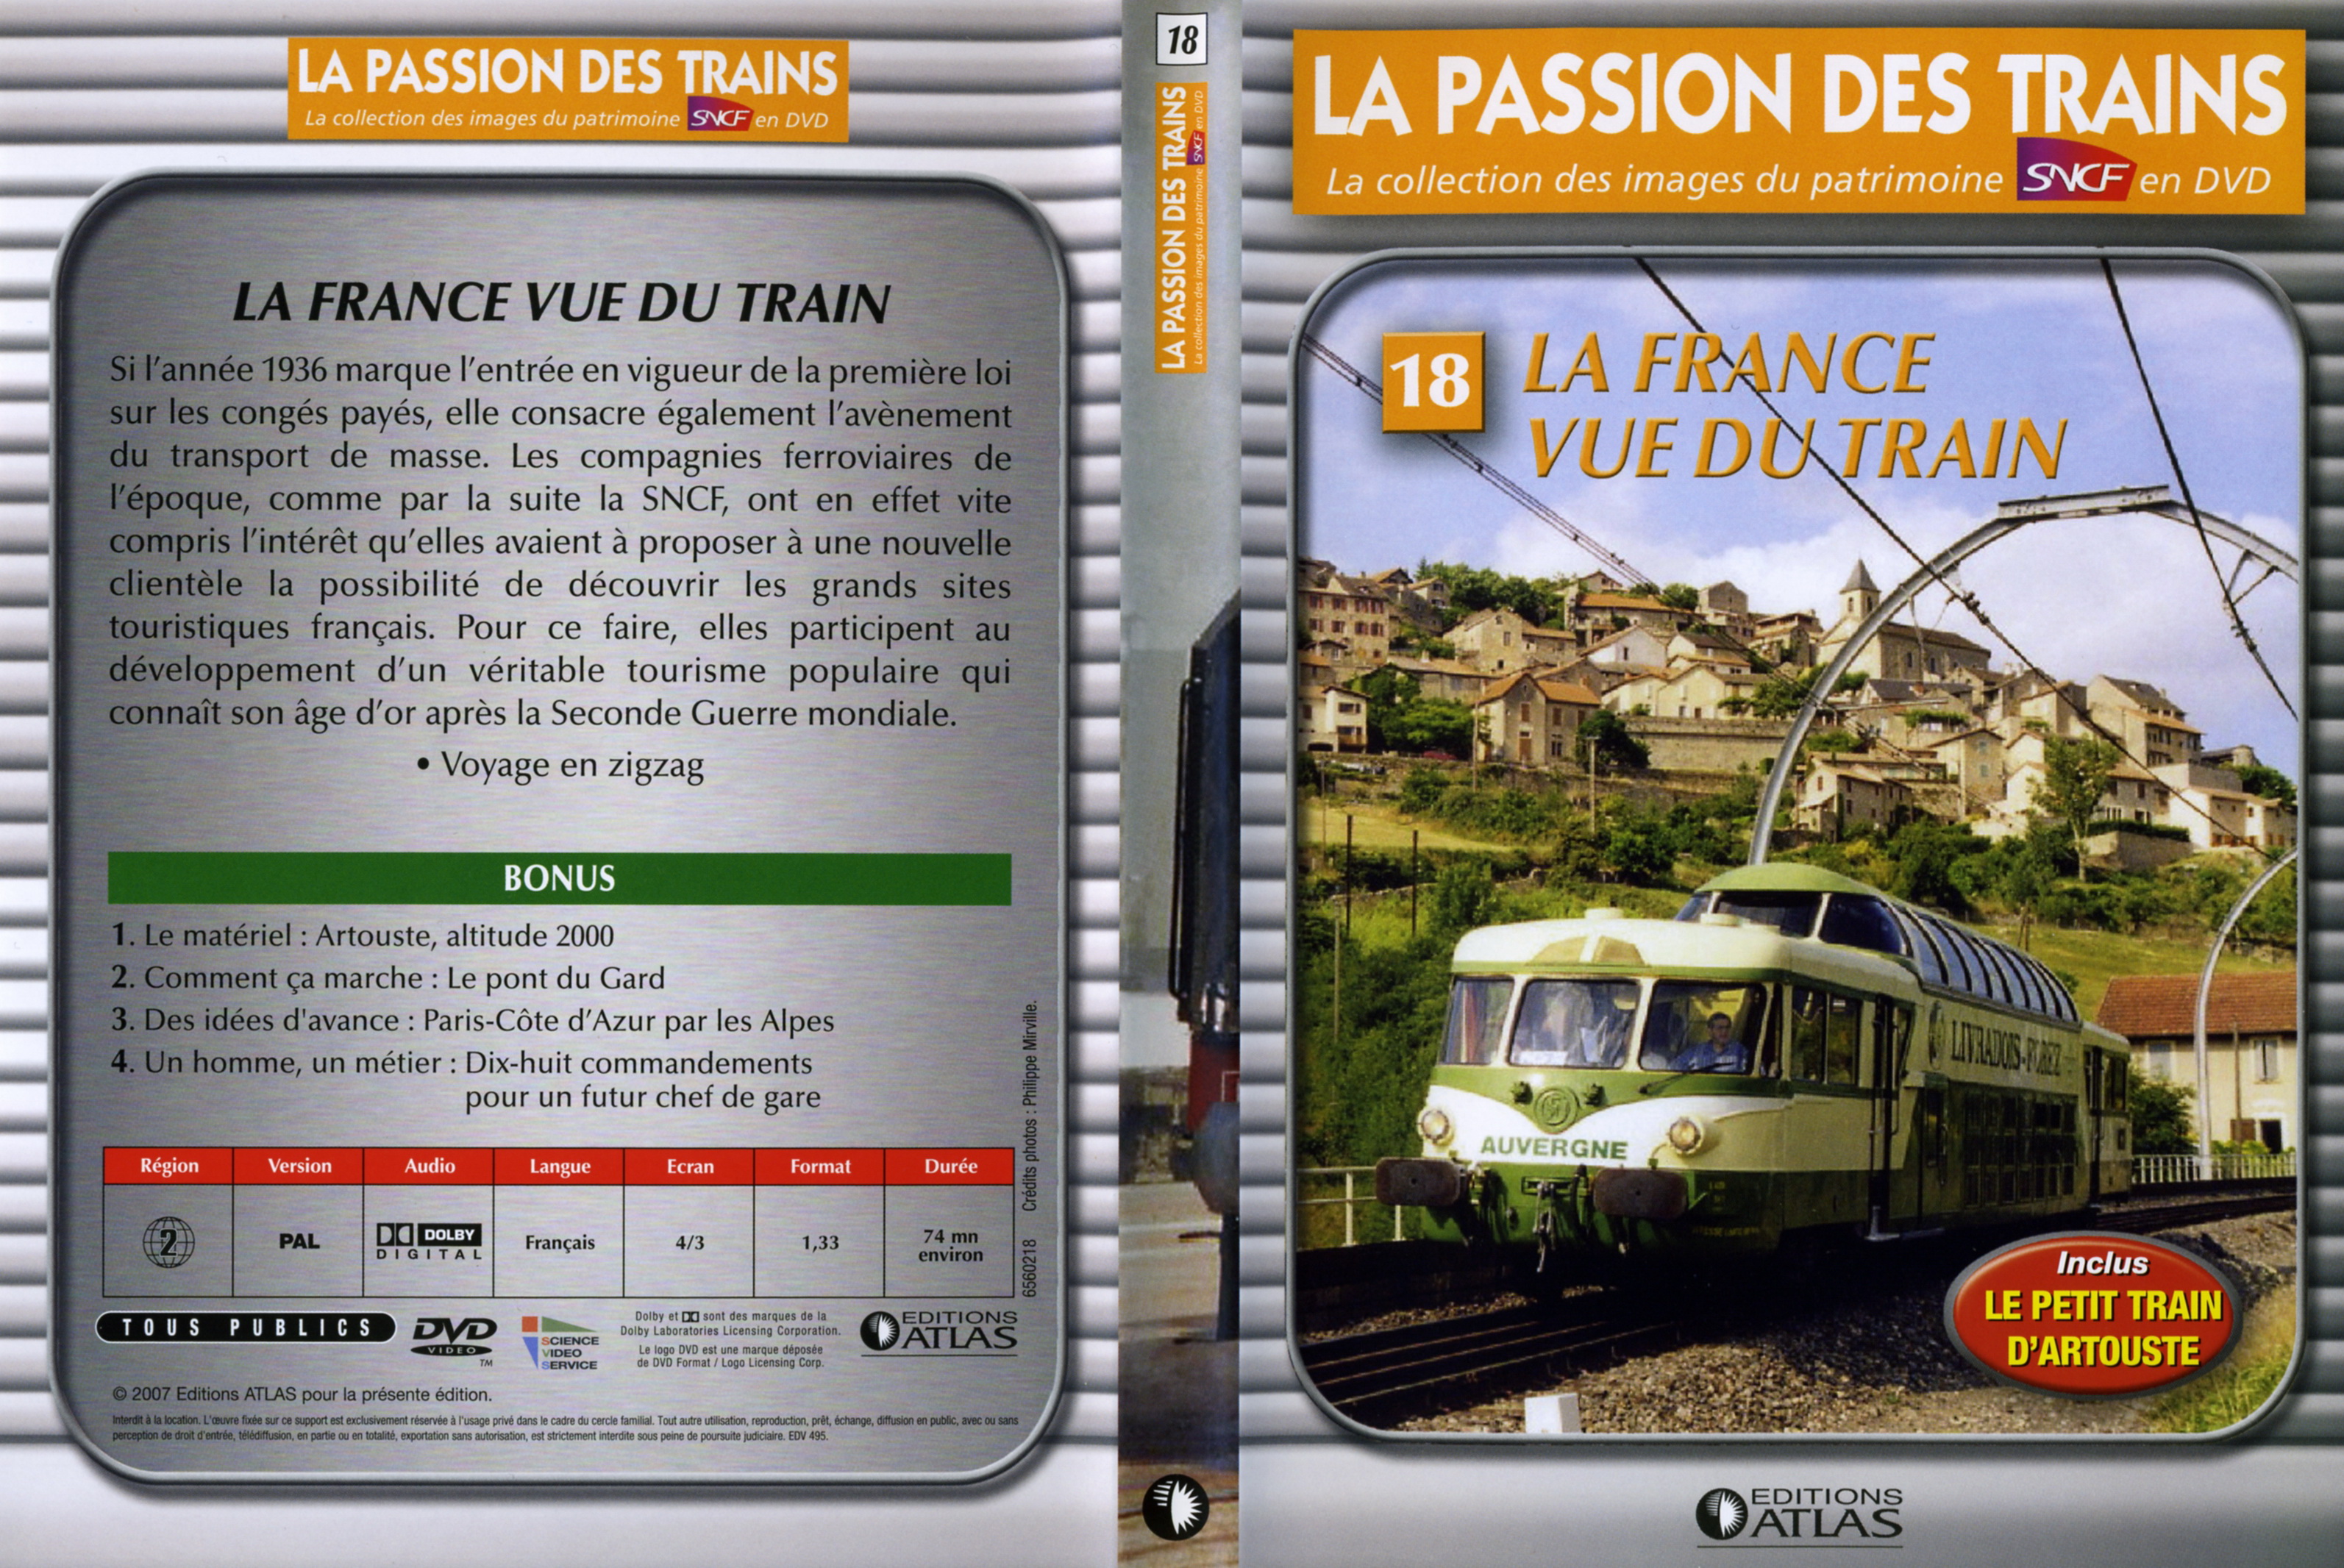 Jaquette DVD LLa passion des trains vol 18